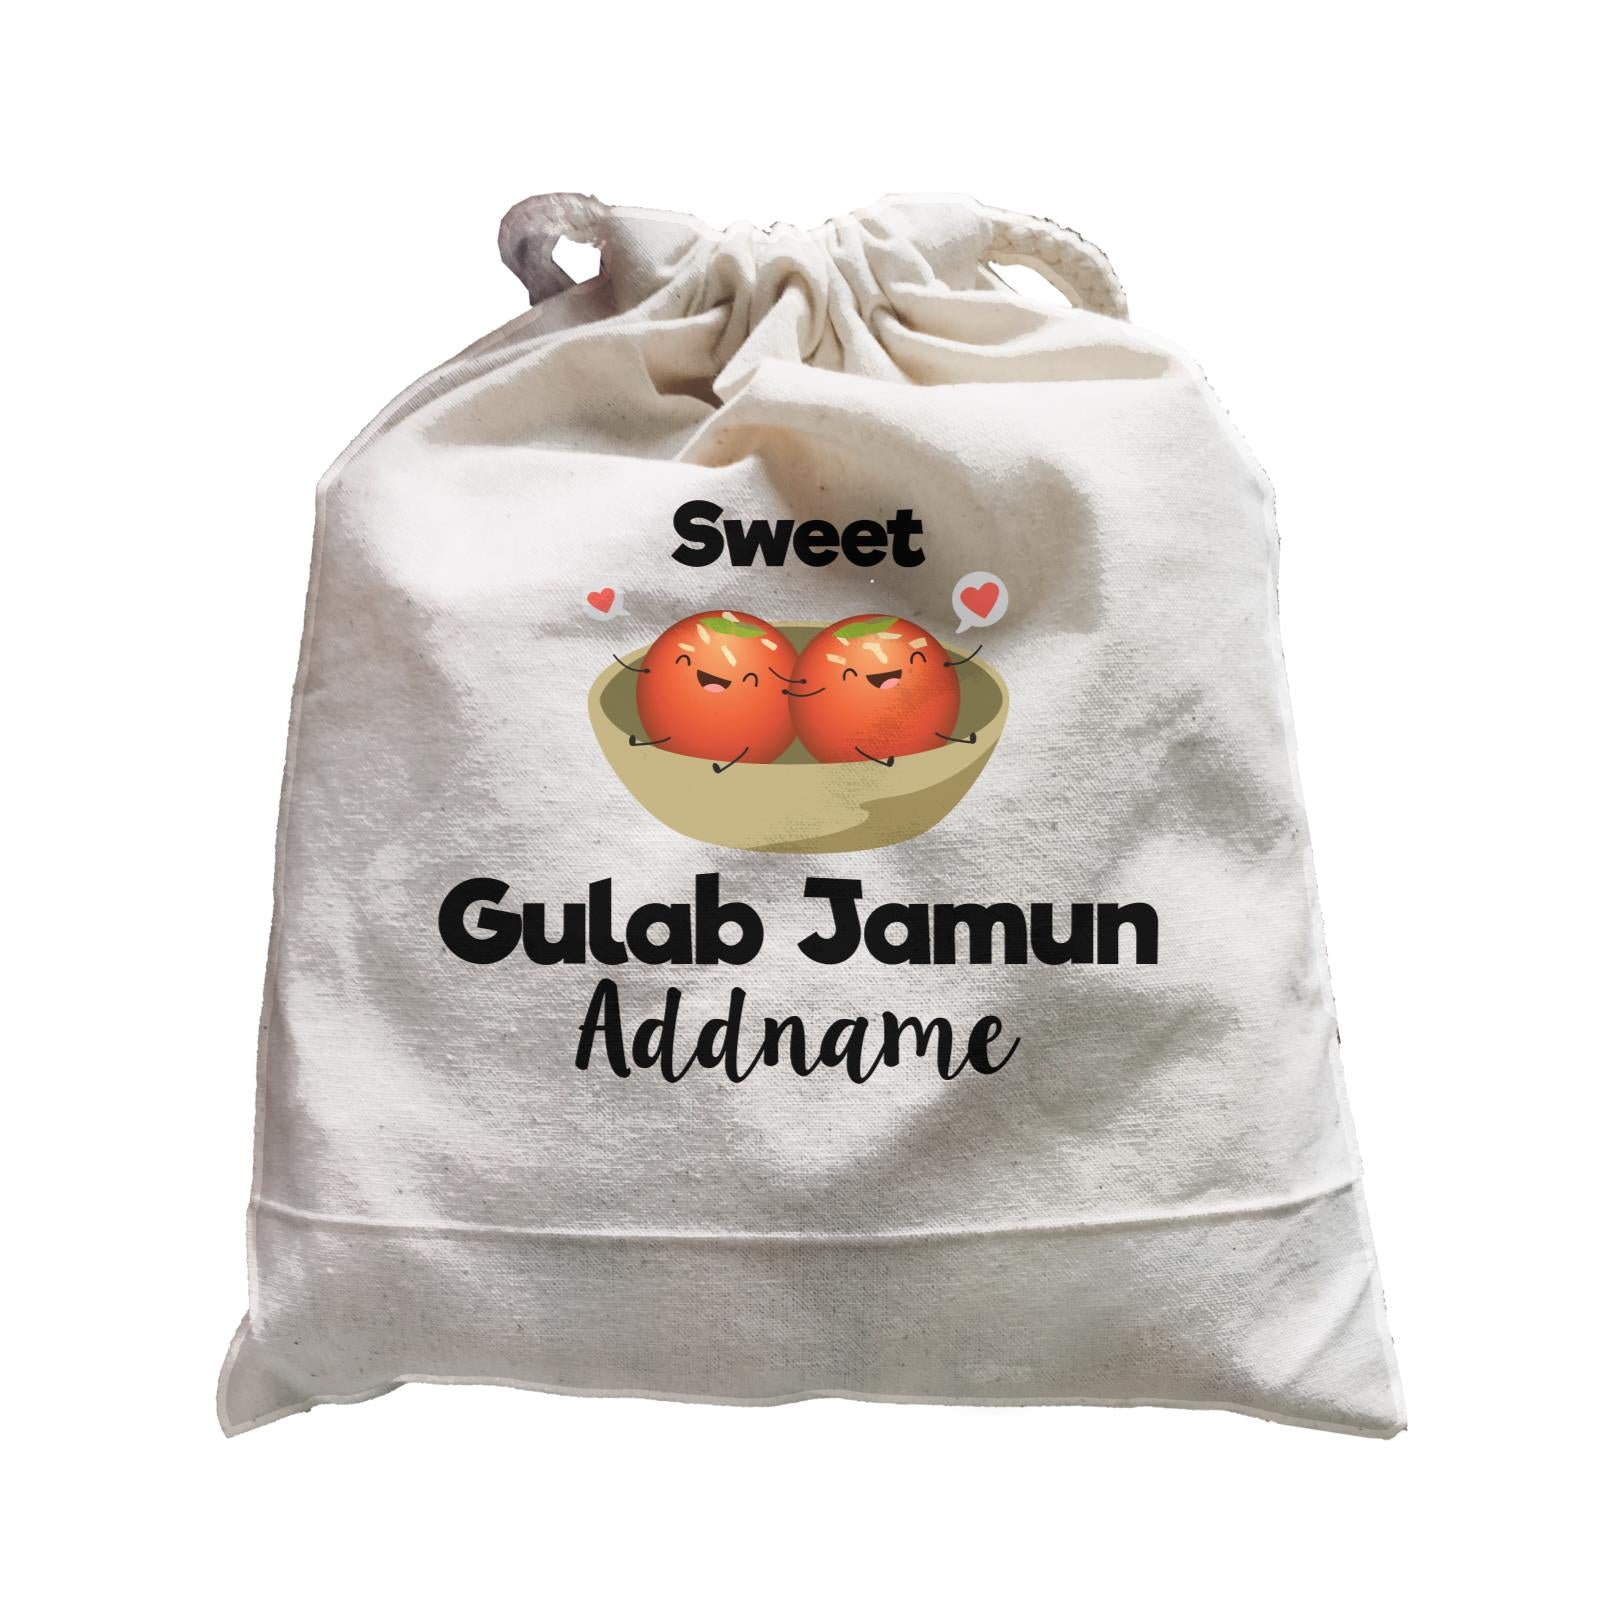 Sweet Gulab Jamun Addname Satchel